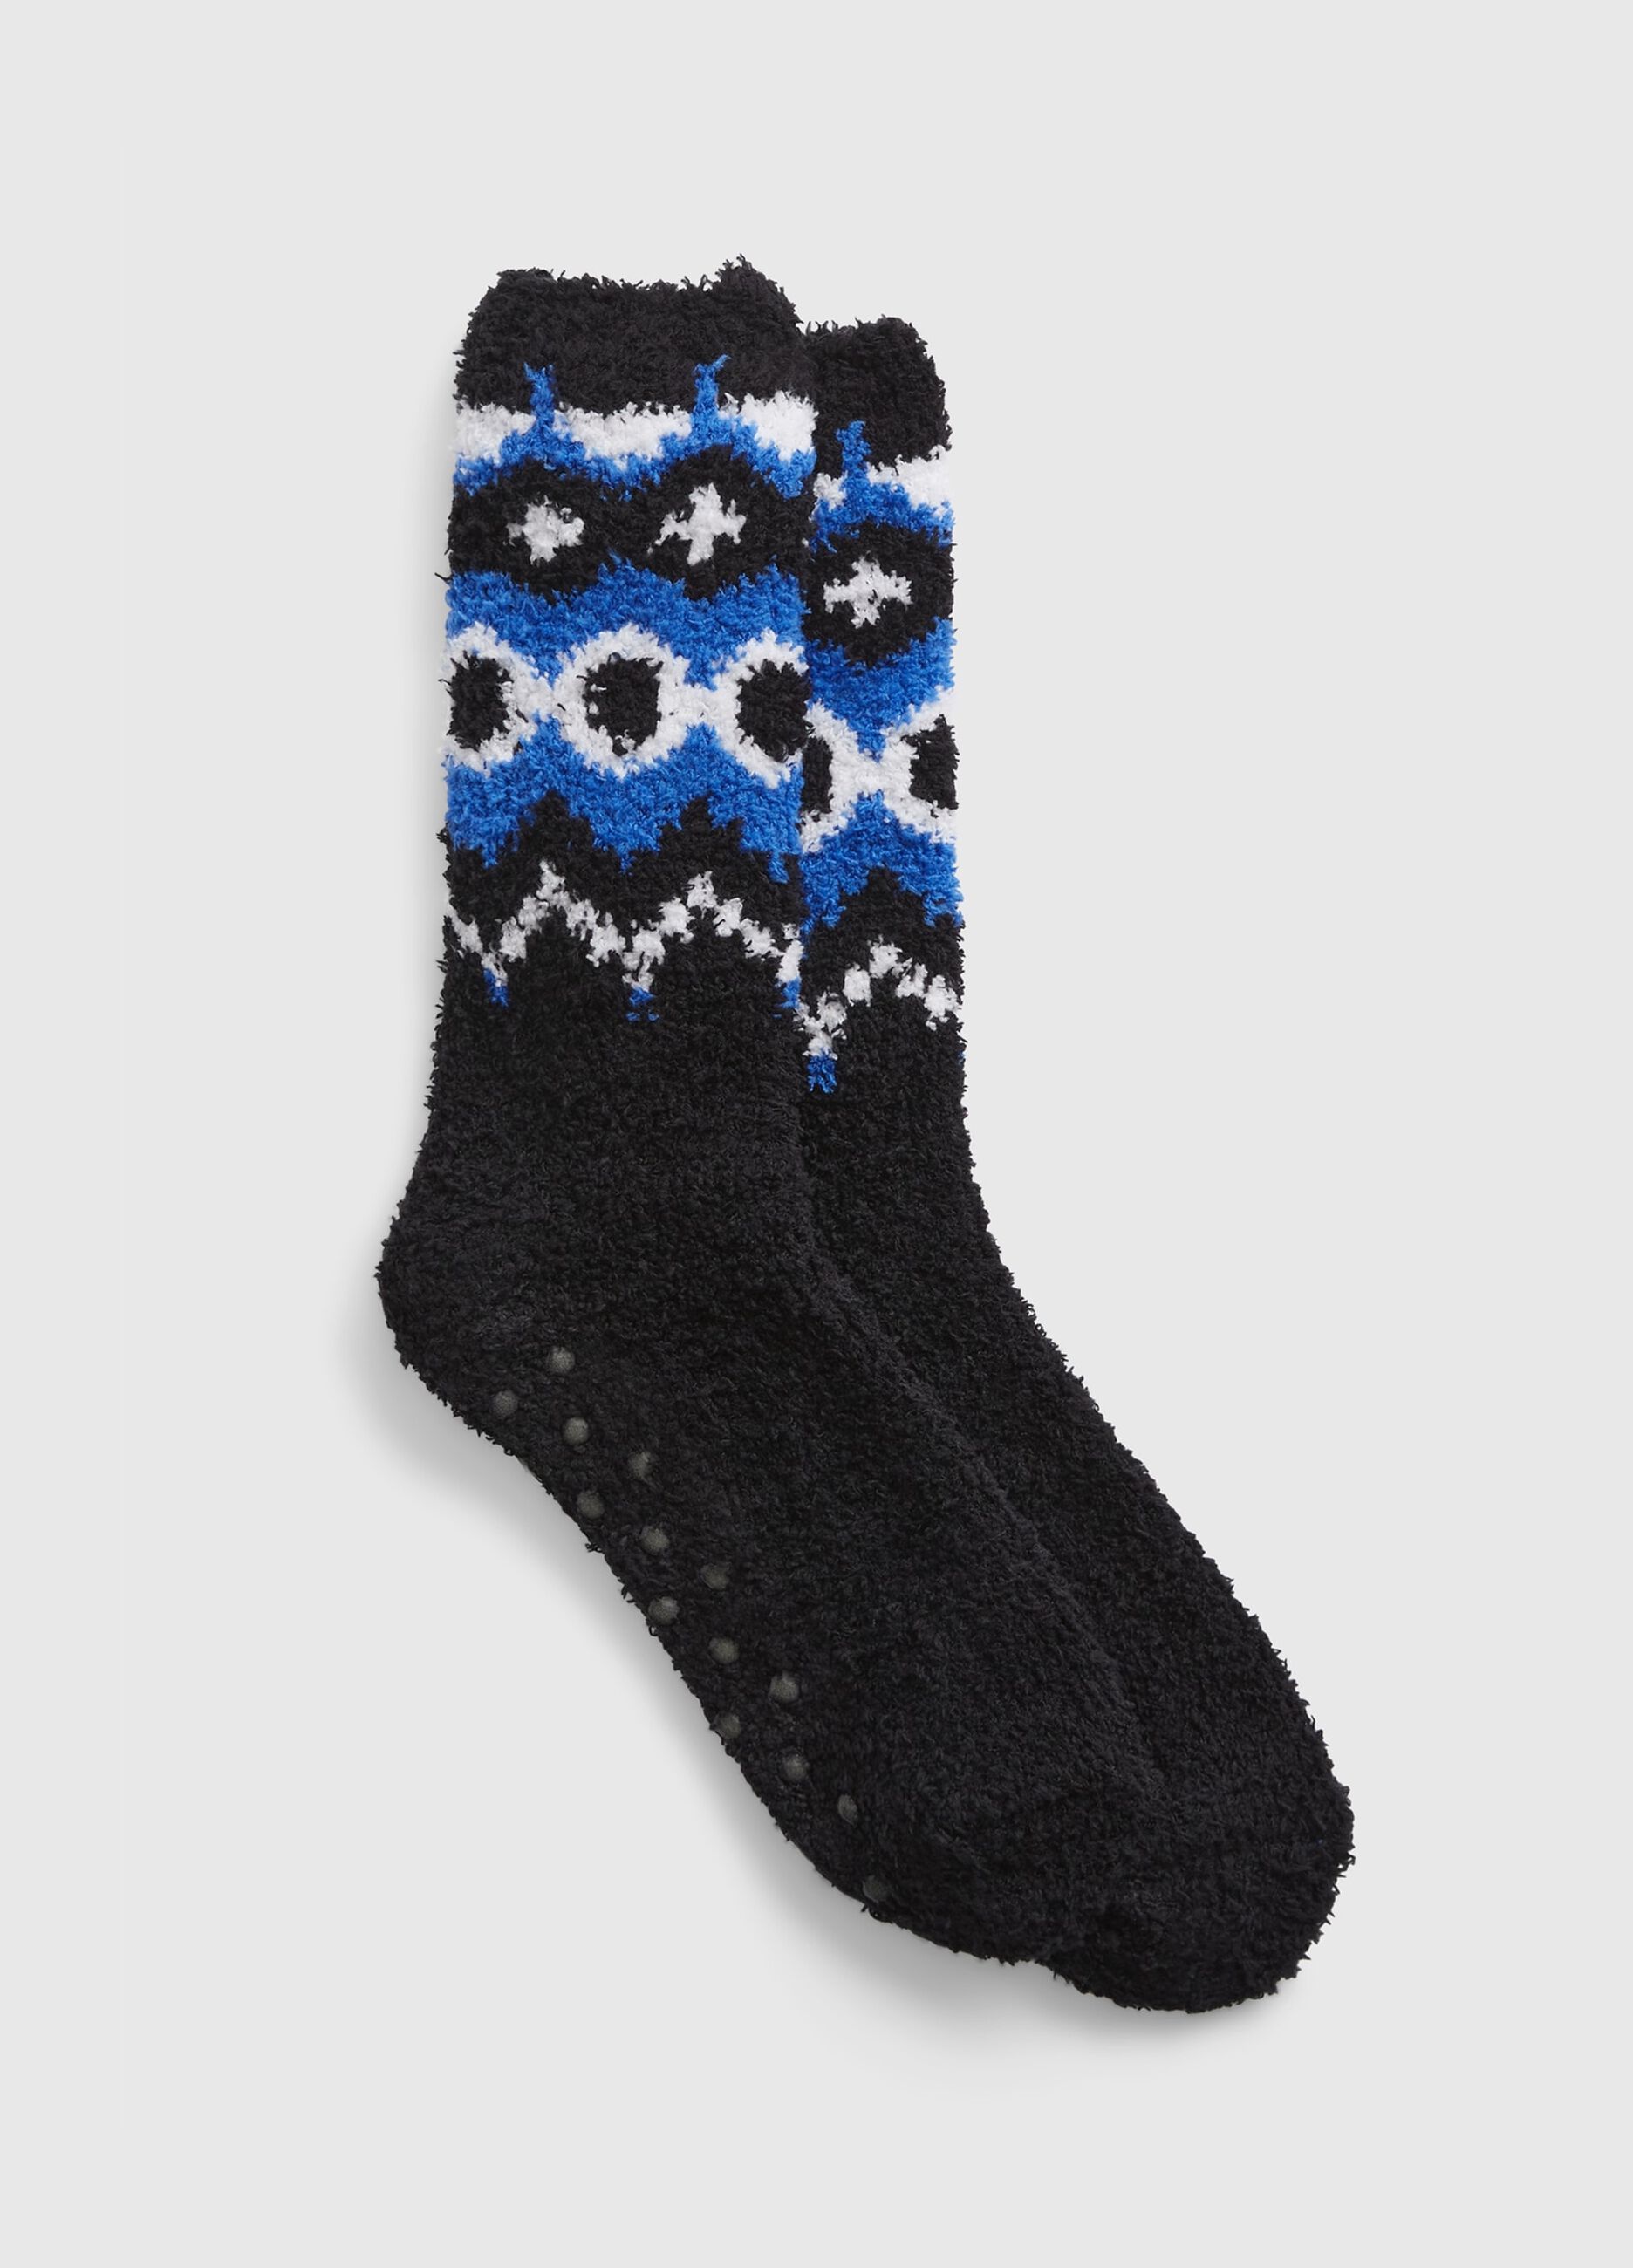 Slipper socks with Norwegian design